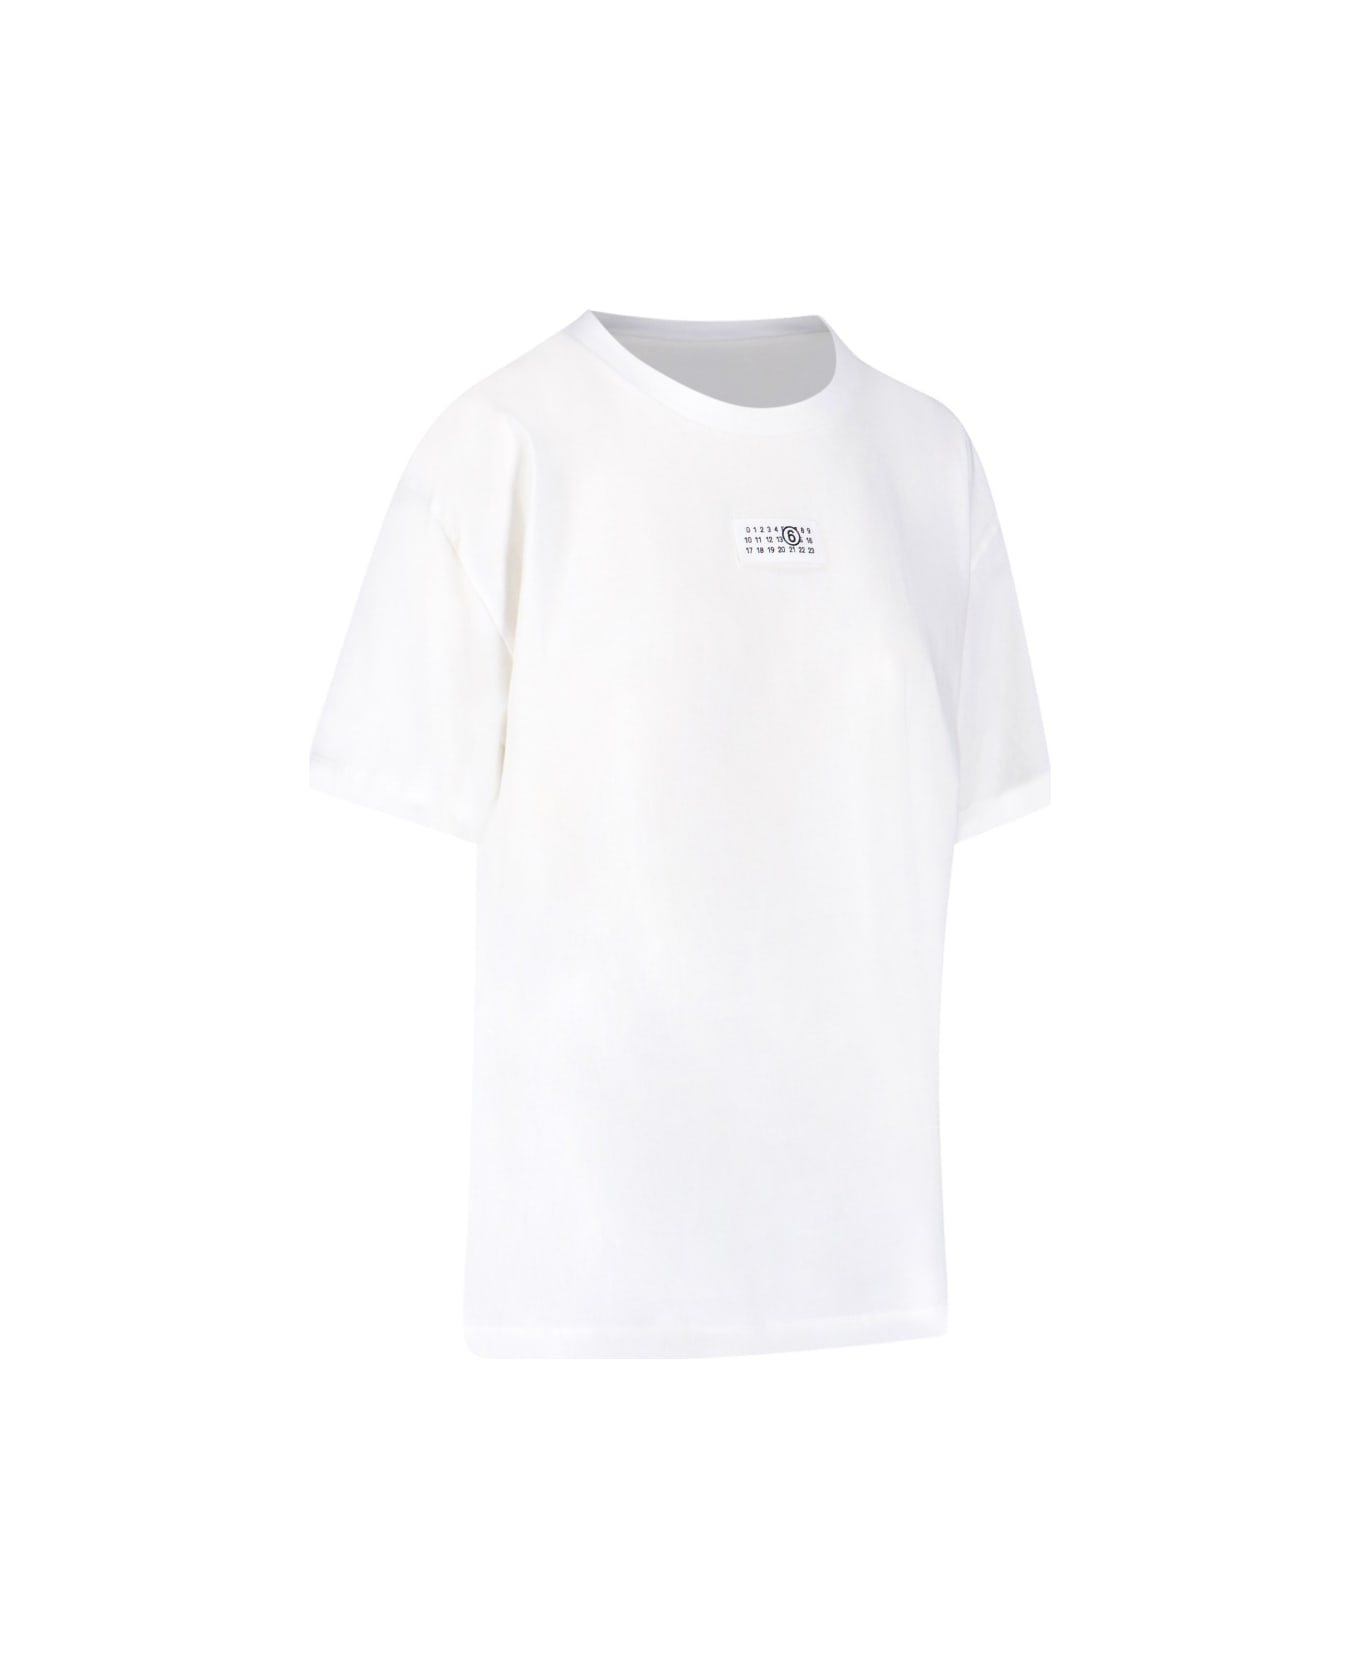 MM6 Maison Margiela Crew-neck T-shirt - White シャツ